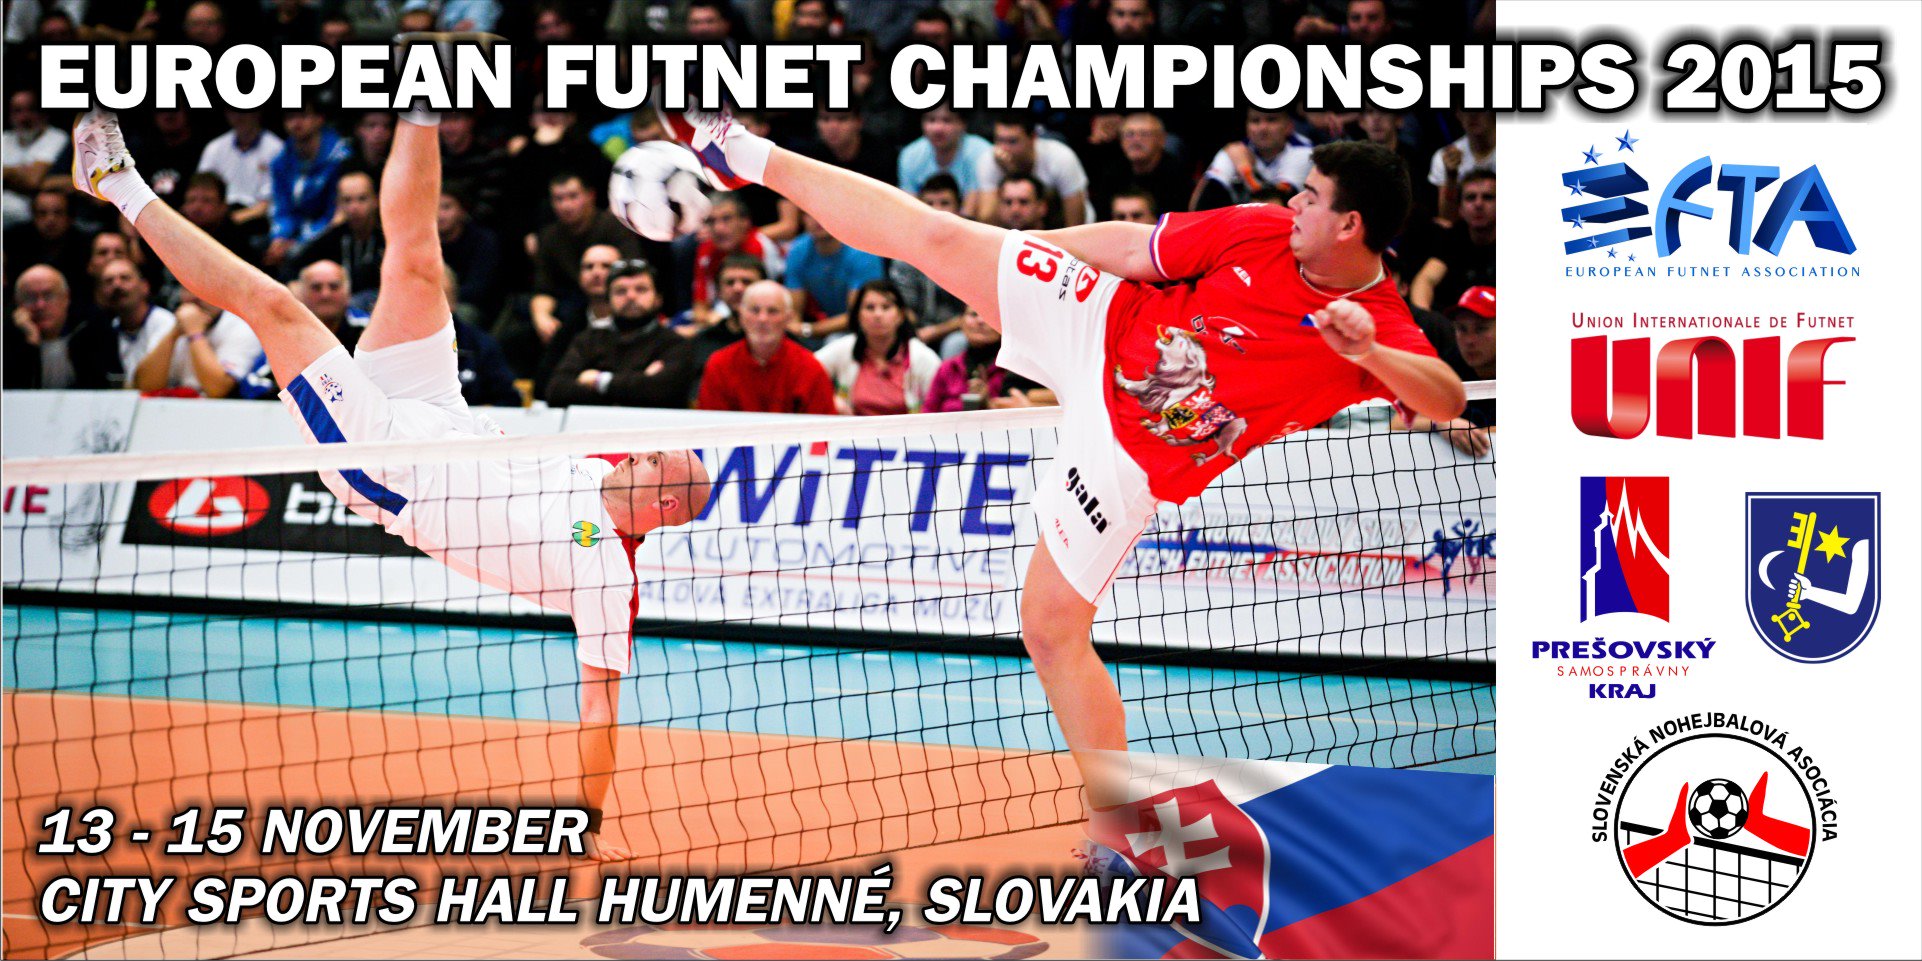 Campeonato de Europa de Futnet en Eslovaquia.